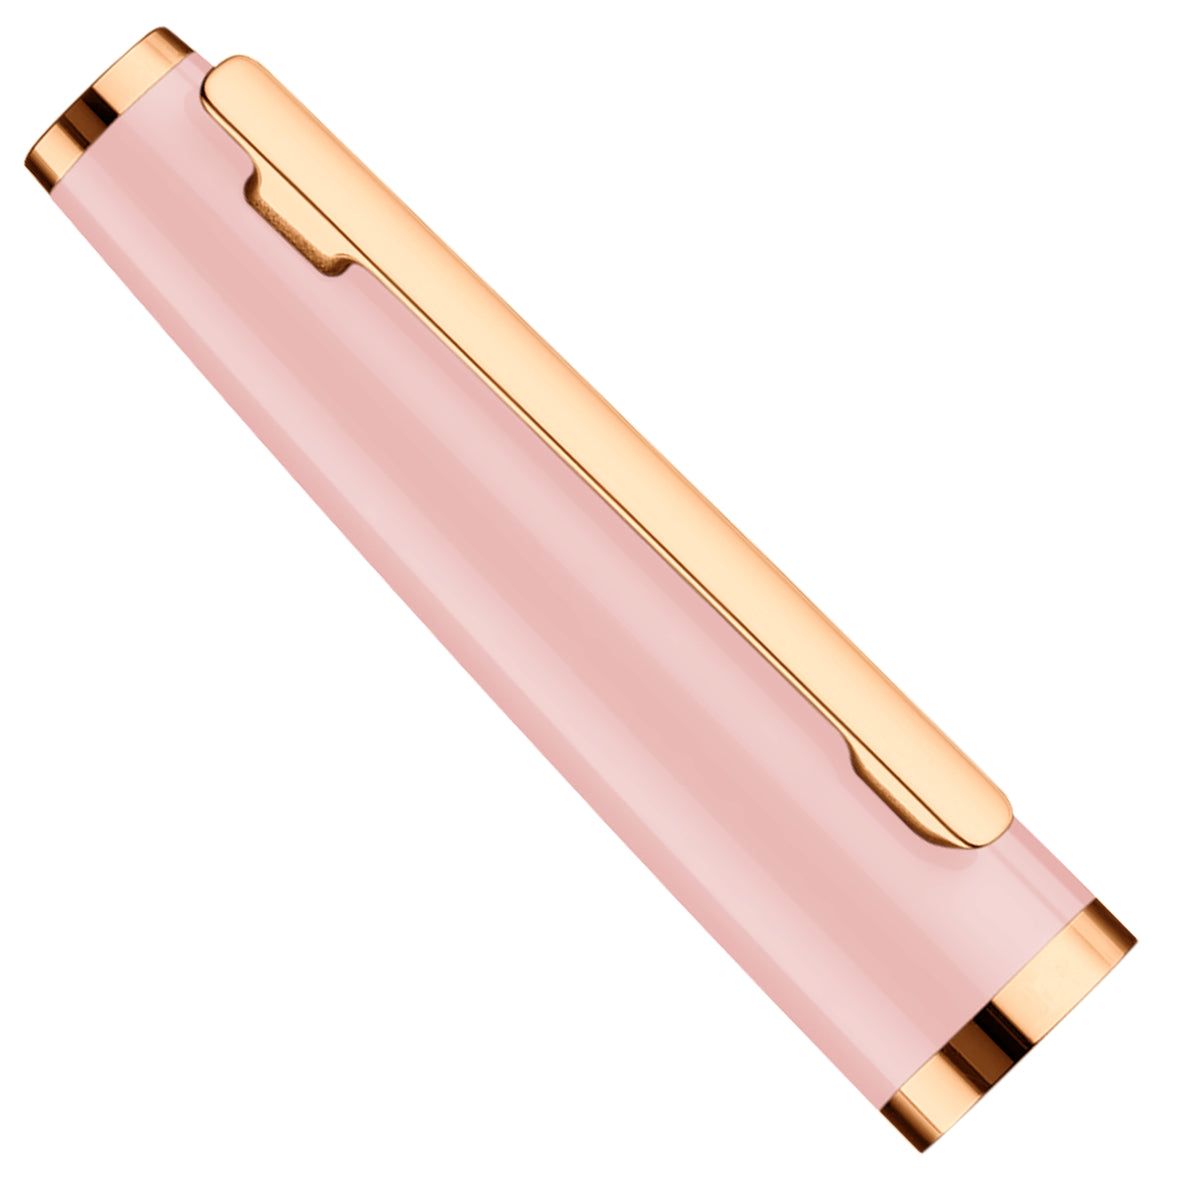 Füllfederhalter Otto Hutt Design06 - Pink Glanz, Beschlagteile rosé vergoldet / Stahlfeder